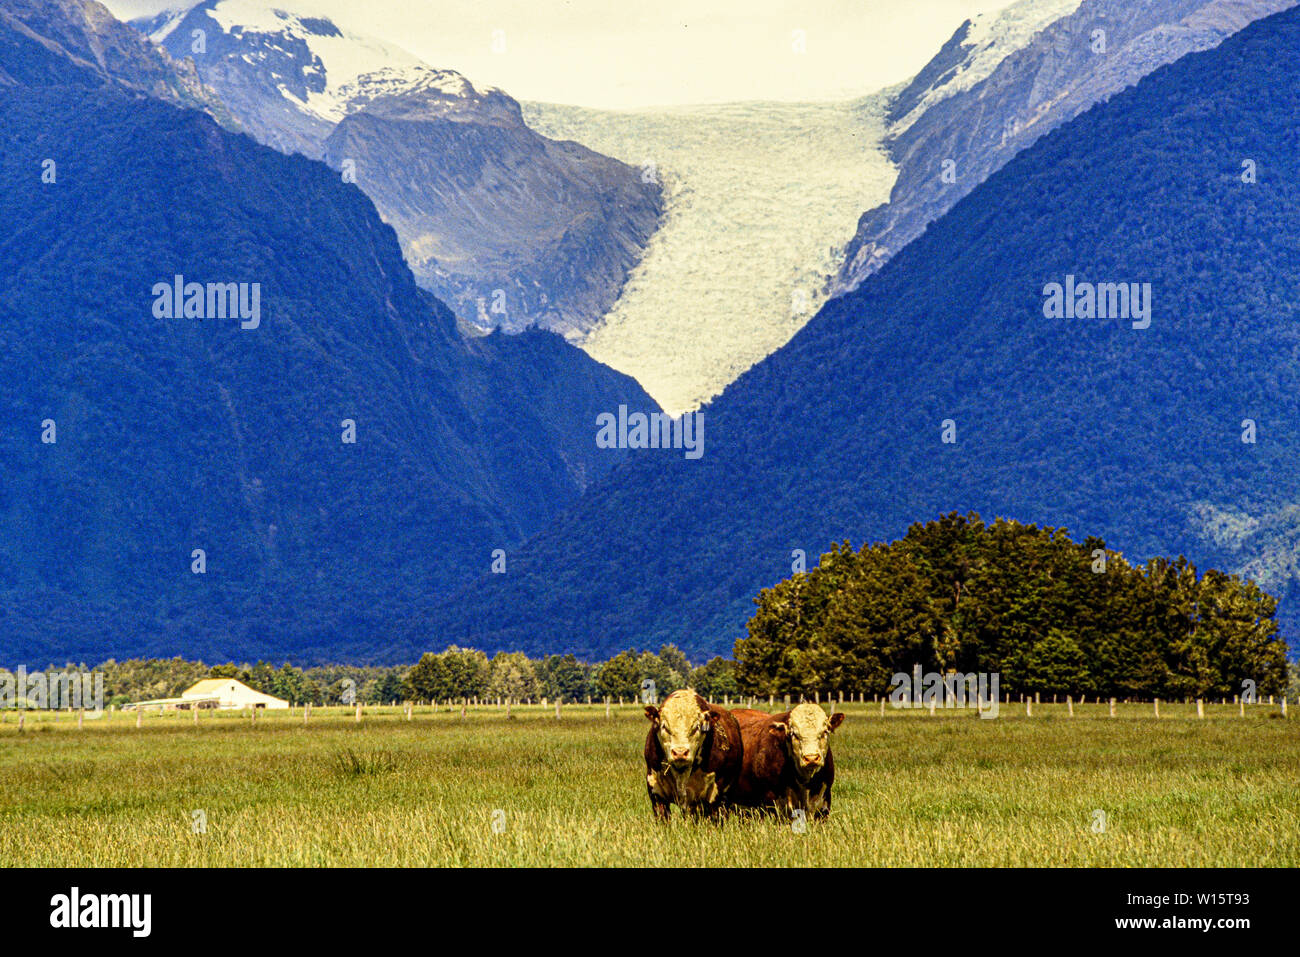 Neuseeland, Südinsel, Westland Tai Poutini National Park. Zwei Bullen oder Rinder weiden in einer Wiese, mit den Franz Josef Gletscher in den Bergen Stockfoto